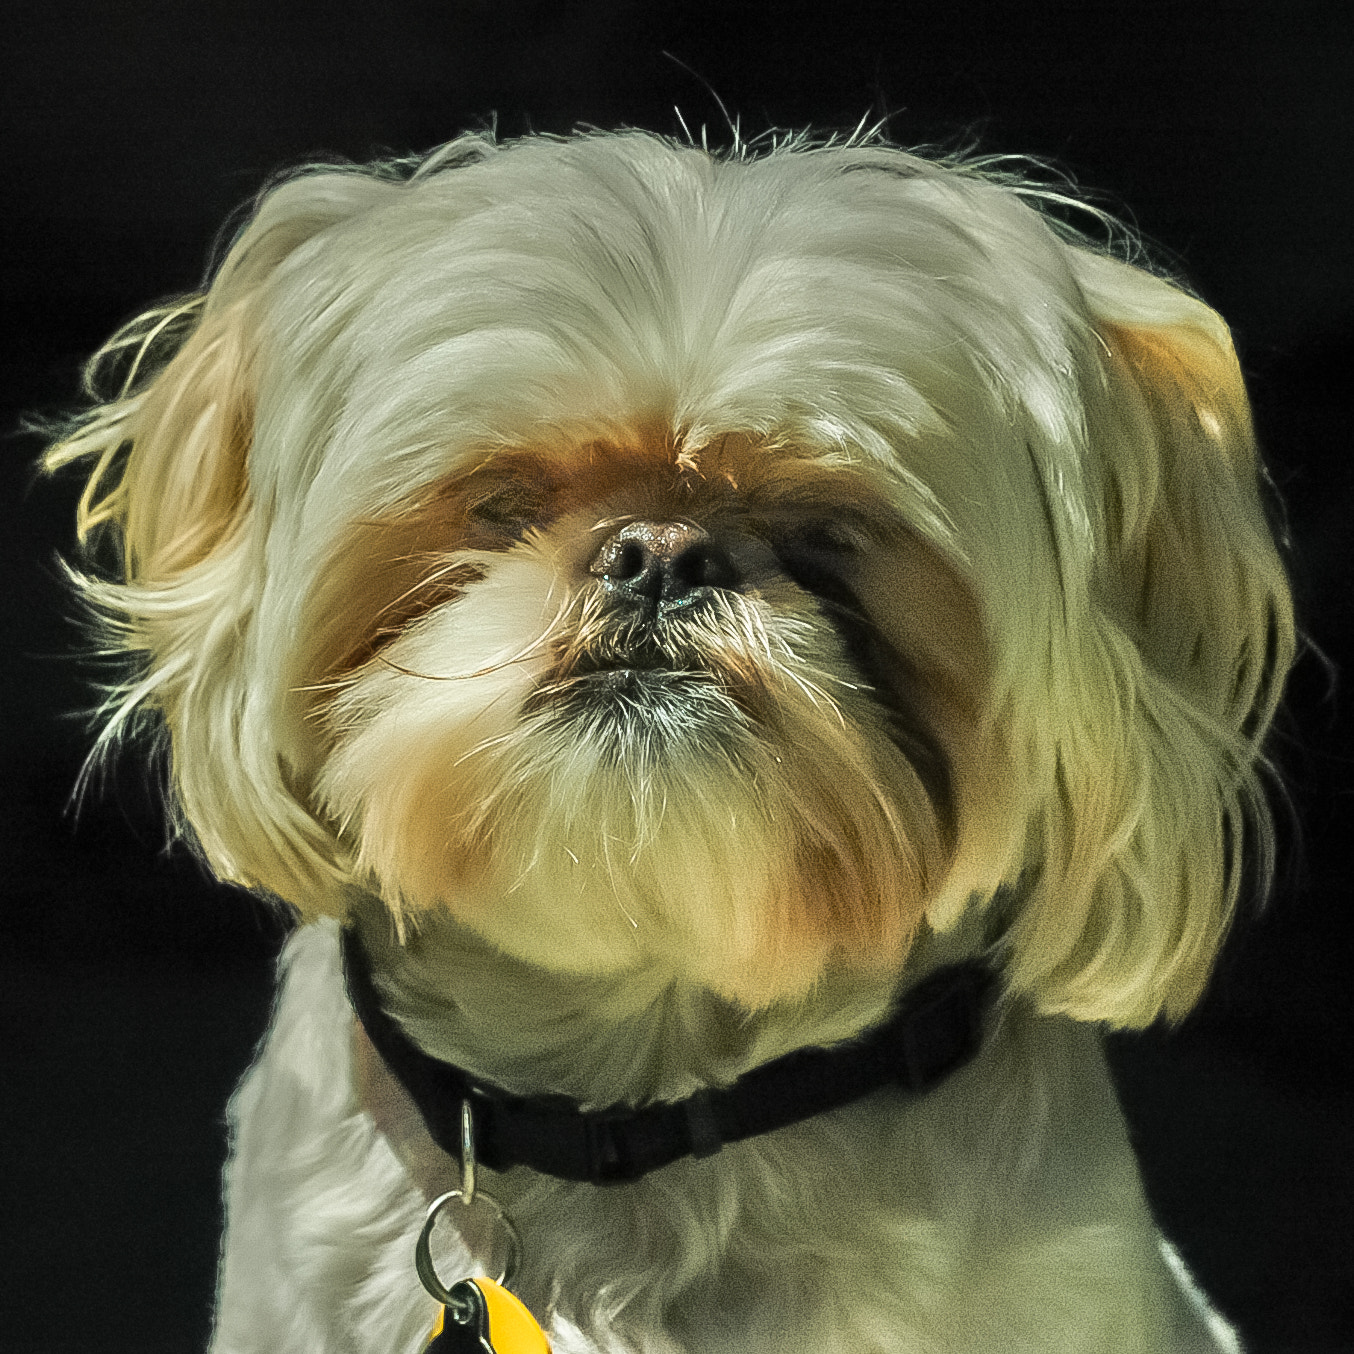 Nikon D70 + AF Zoom-Nikkor 28-200mm f/3.5-5.6G IF-ED sample photo. Dog portrait photography